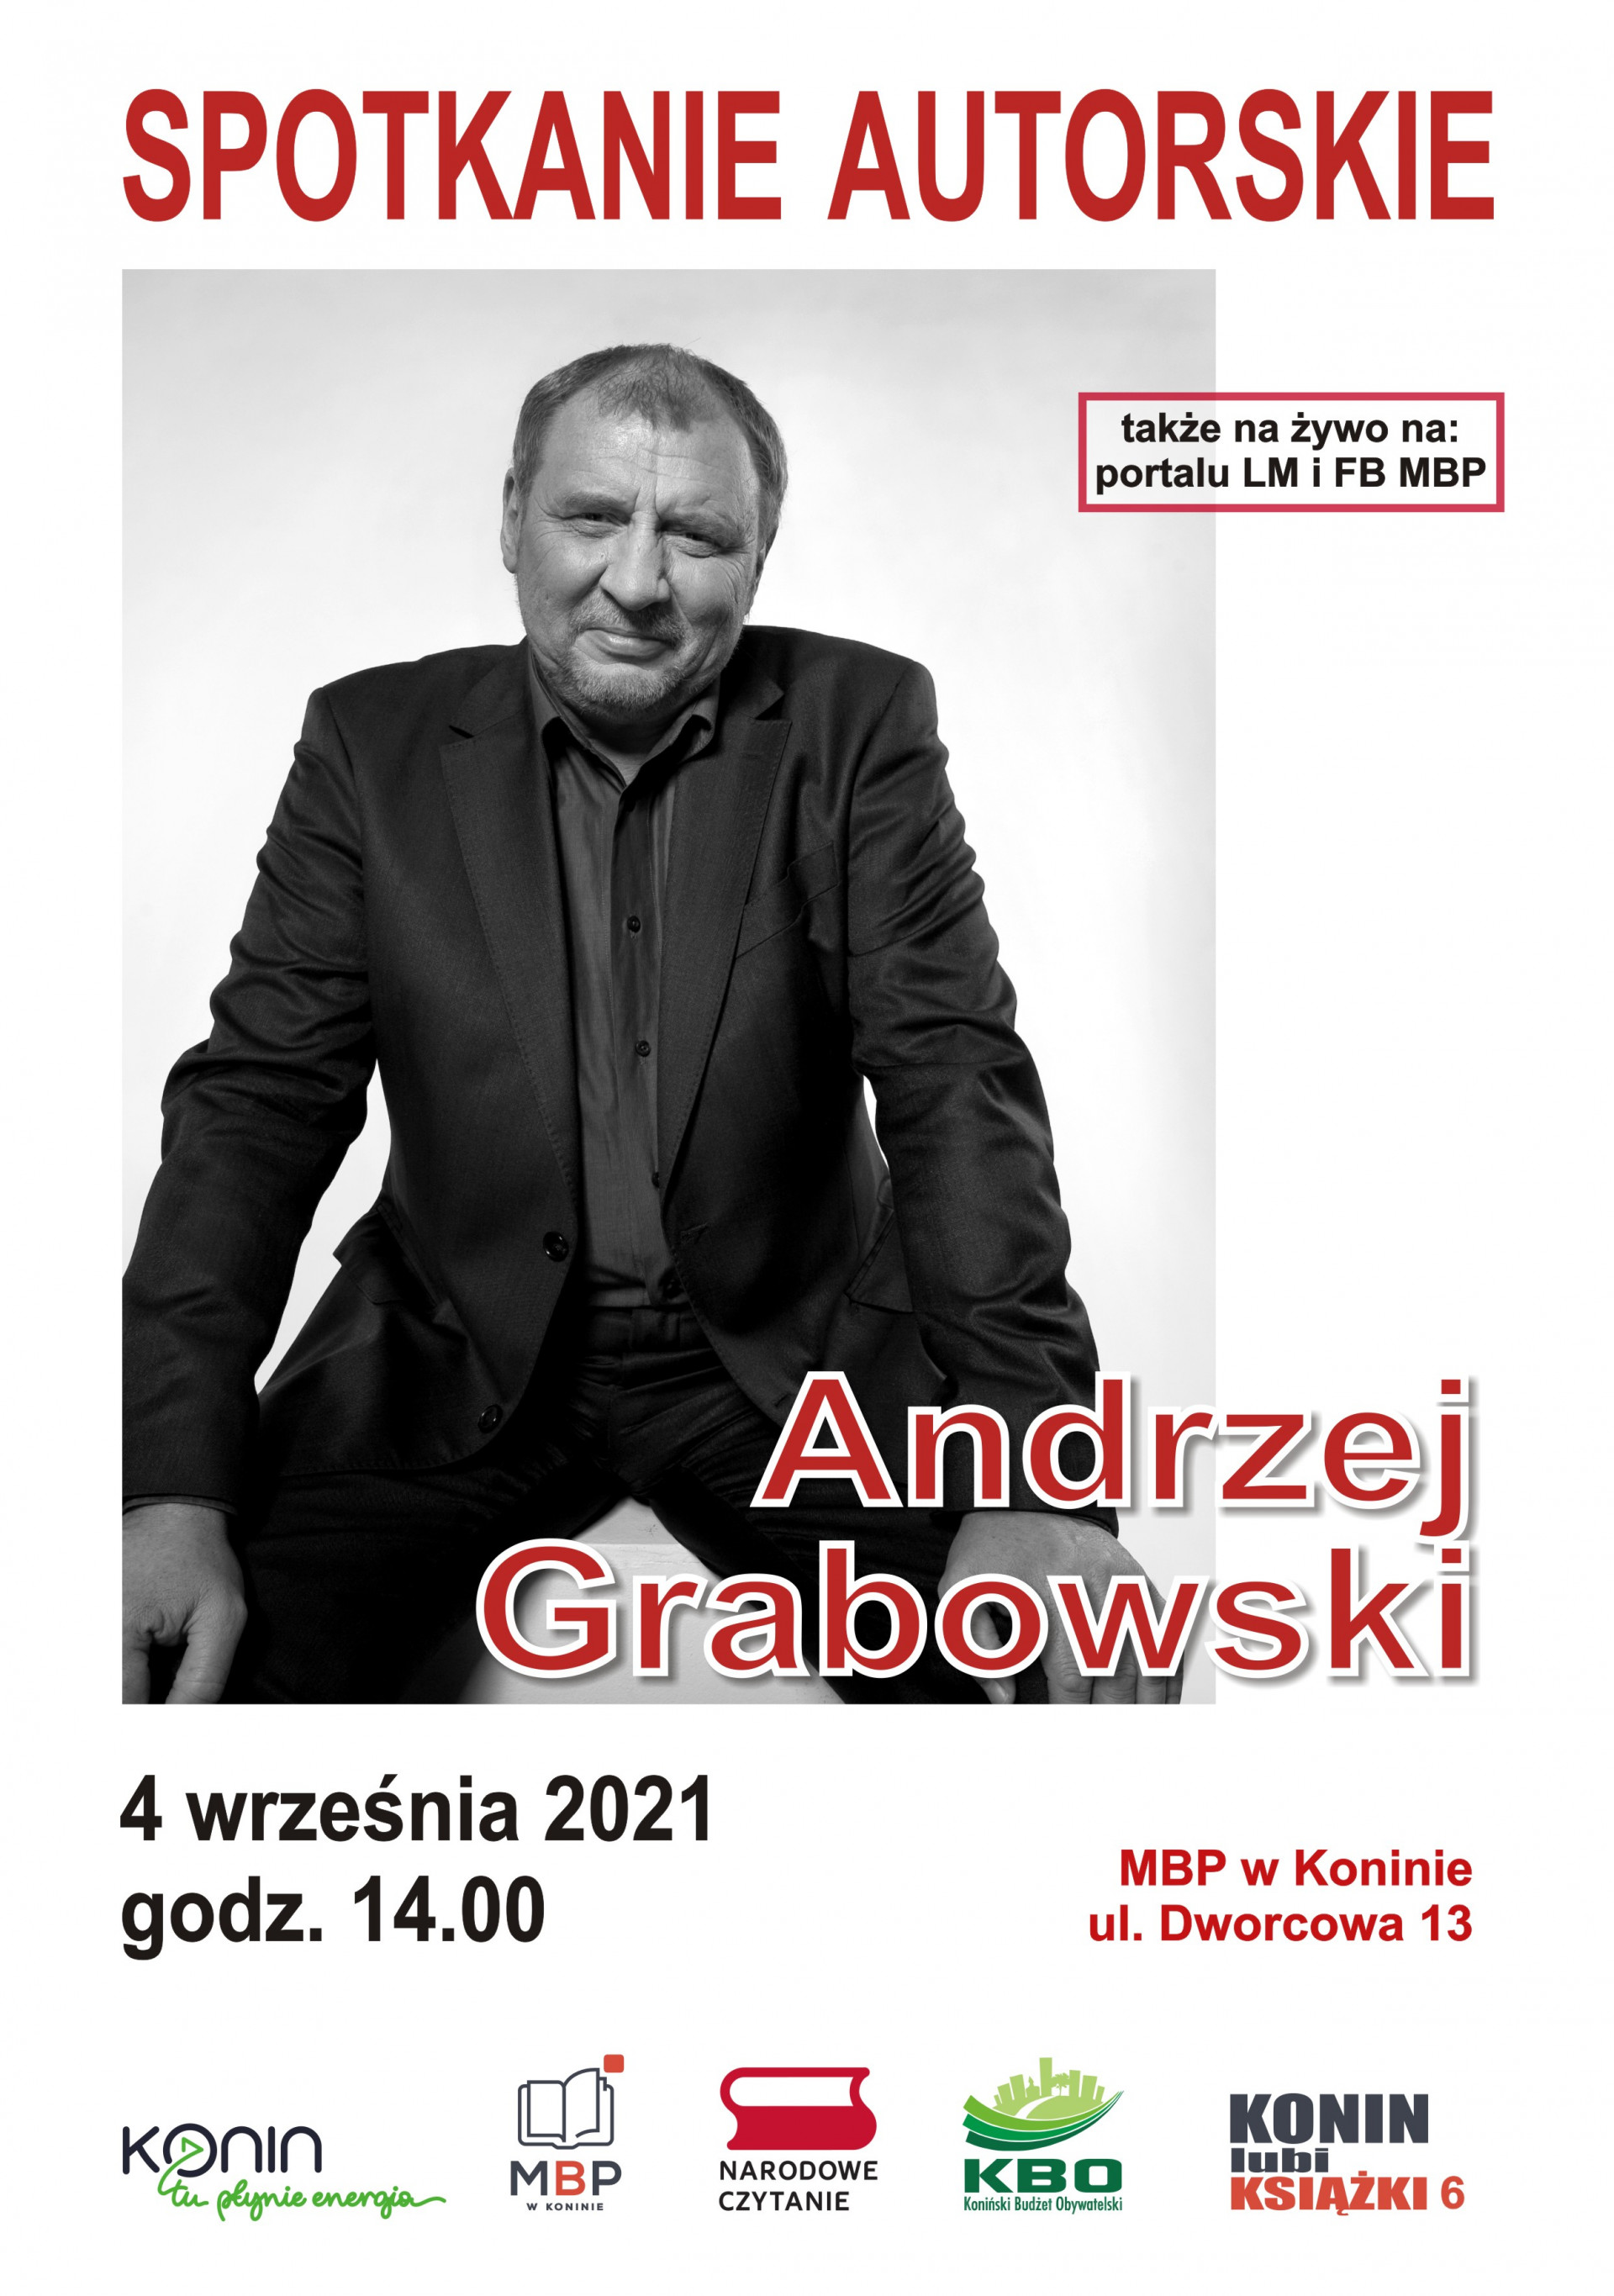 Plakat promujący Narodowe Czytanie 2021 i spotkanie z aktorem Andrzejem Grabowskim w MBP w Koninie